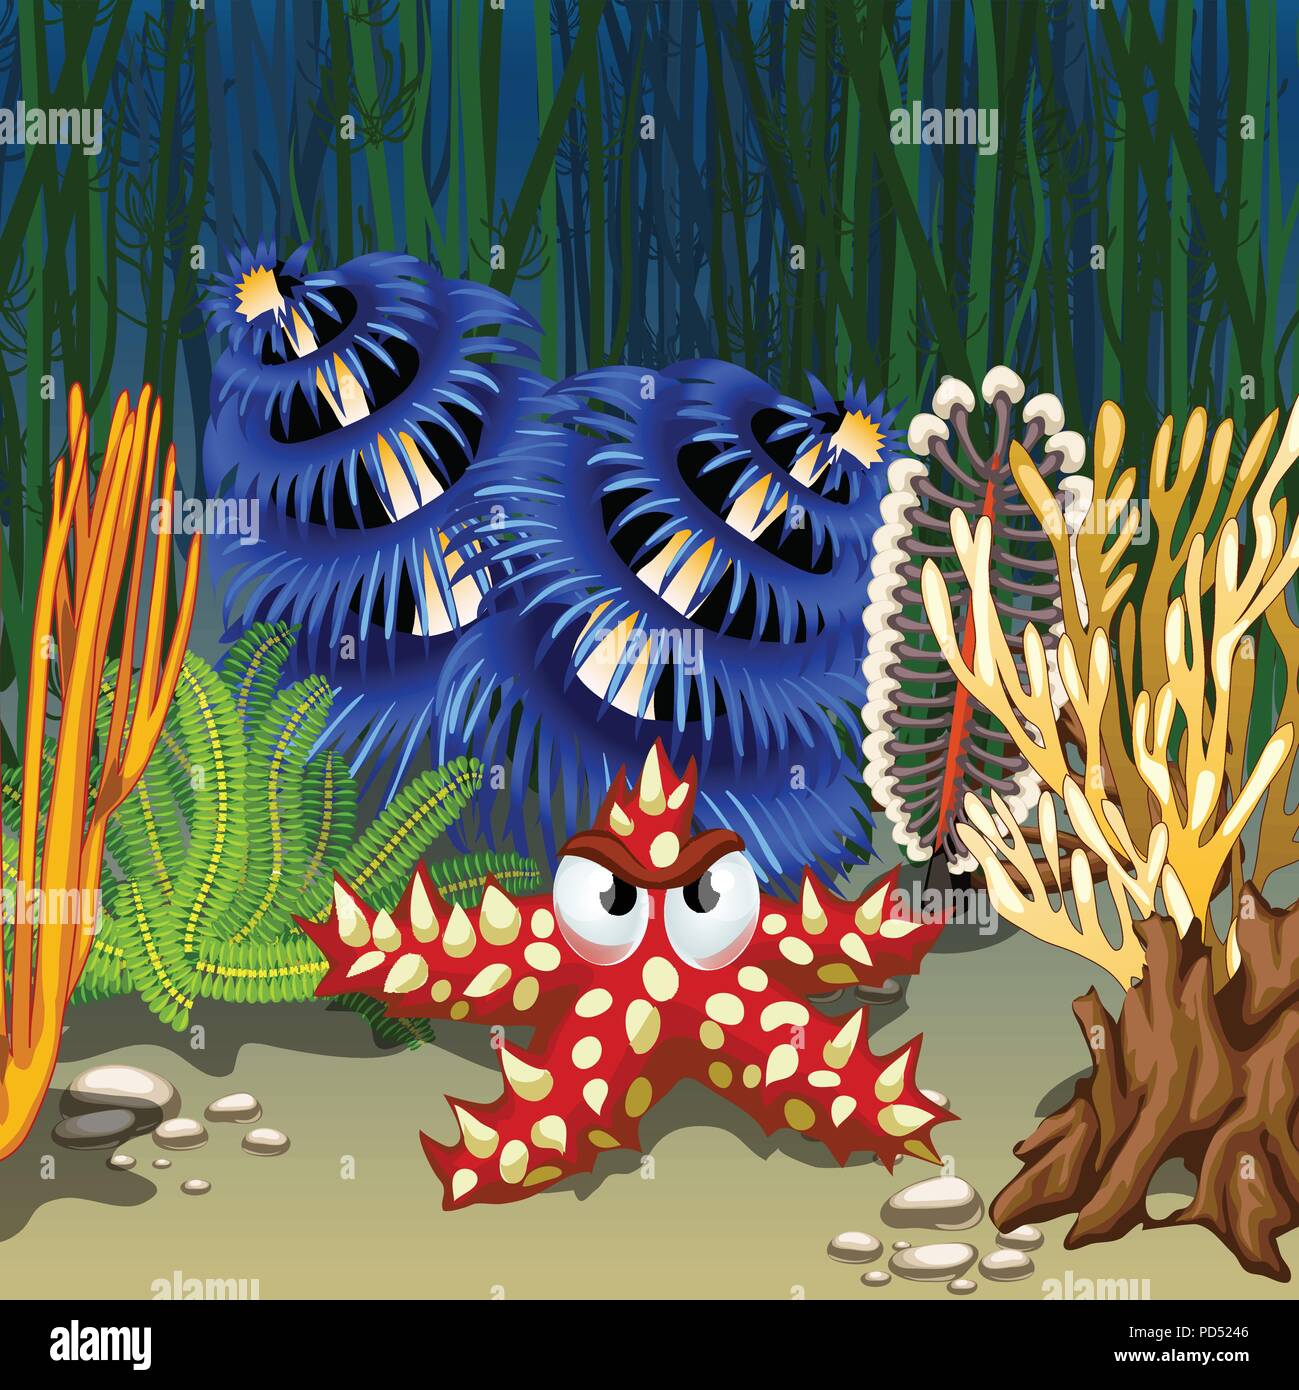 Cartoon Seesterne rot mit stacheligen Dornen auf dem Meeresboden unter Korallen und Algen. Vektor cartoon Close-up Abbildung. Stock Vektor